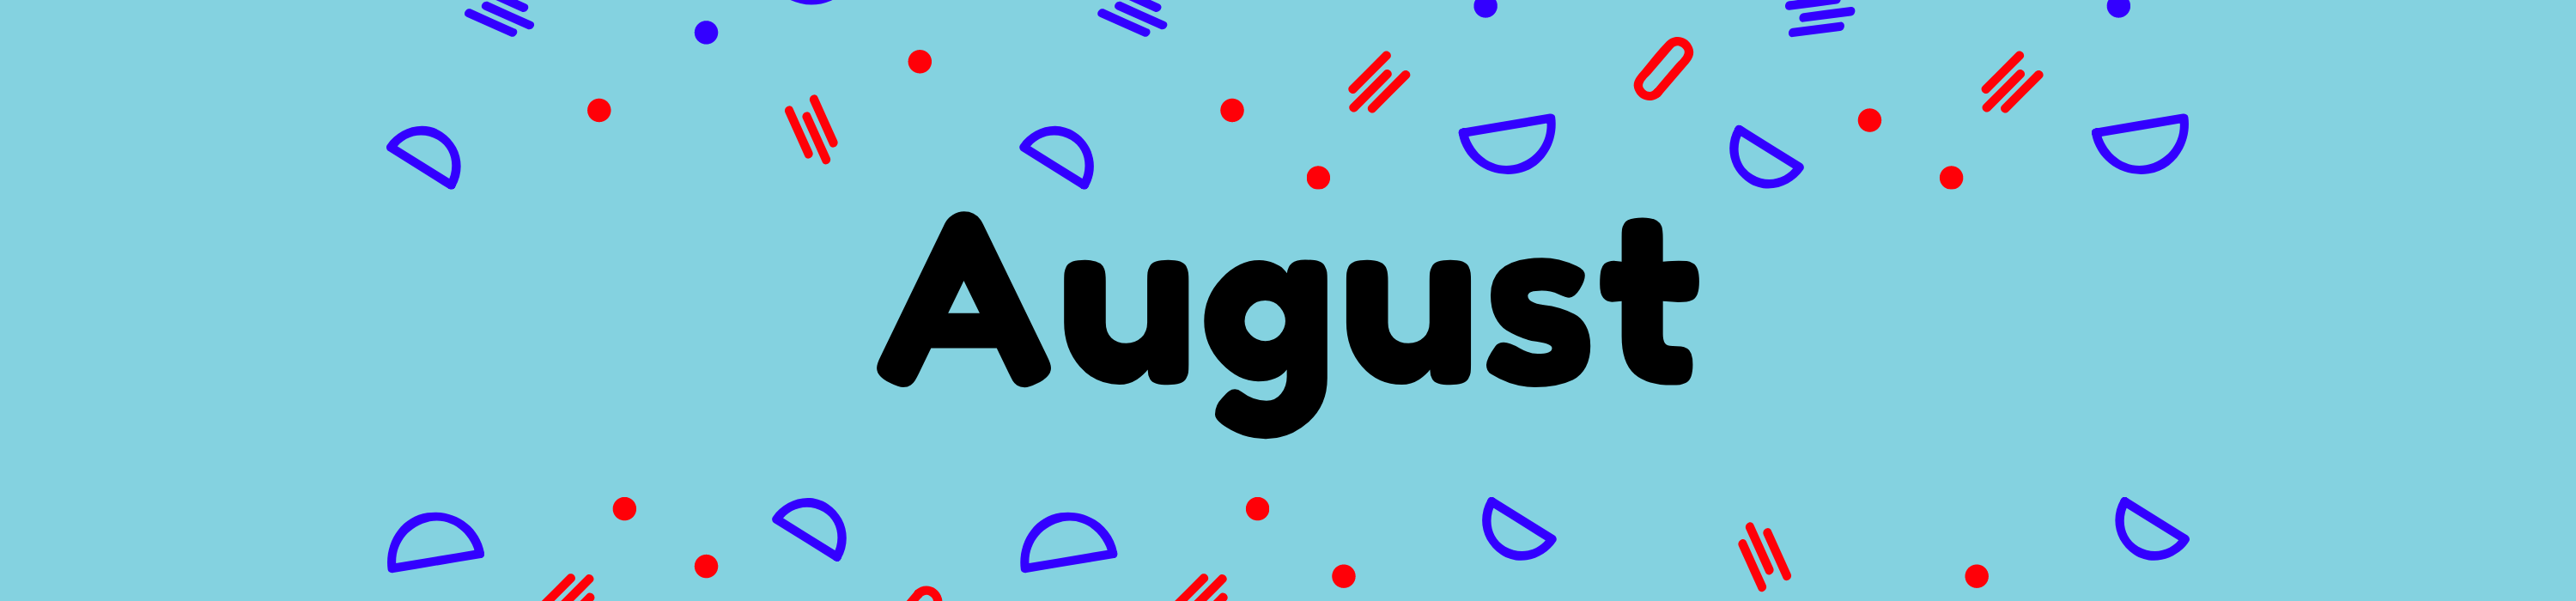 August-banner